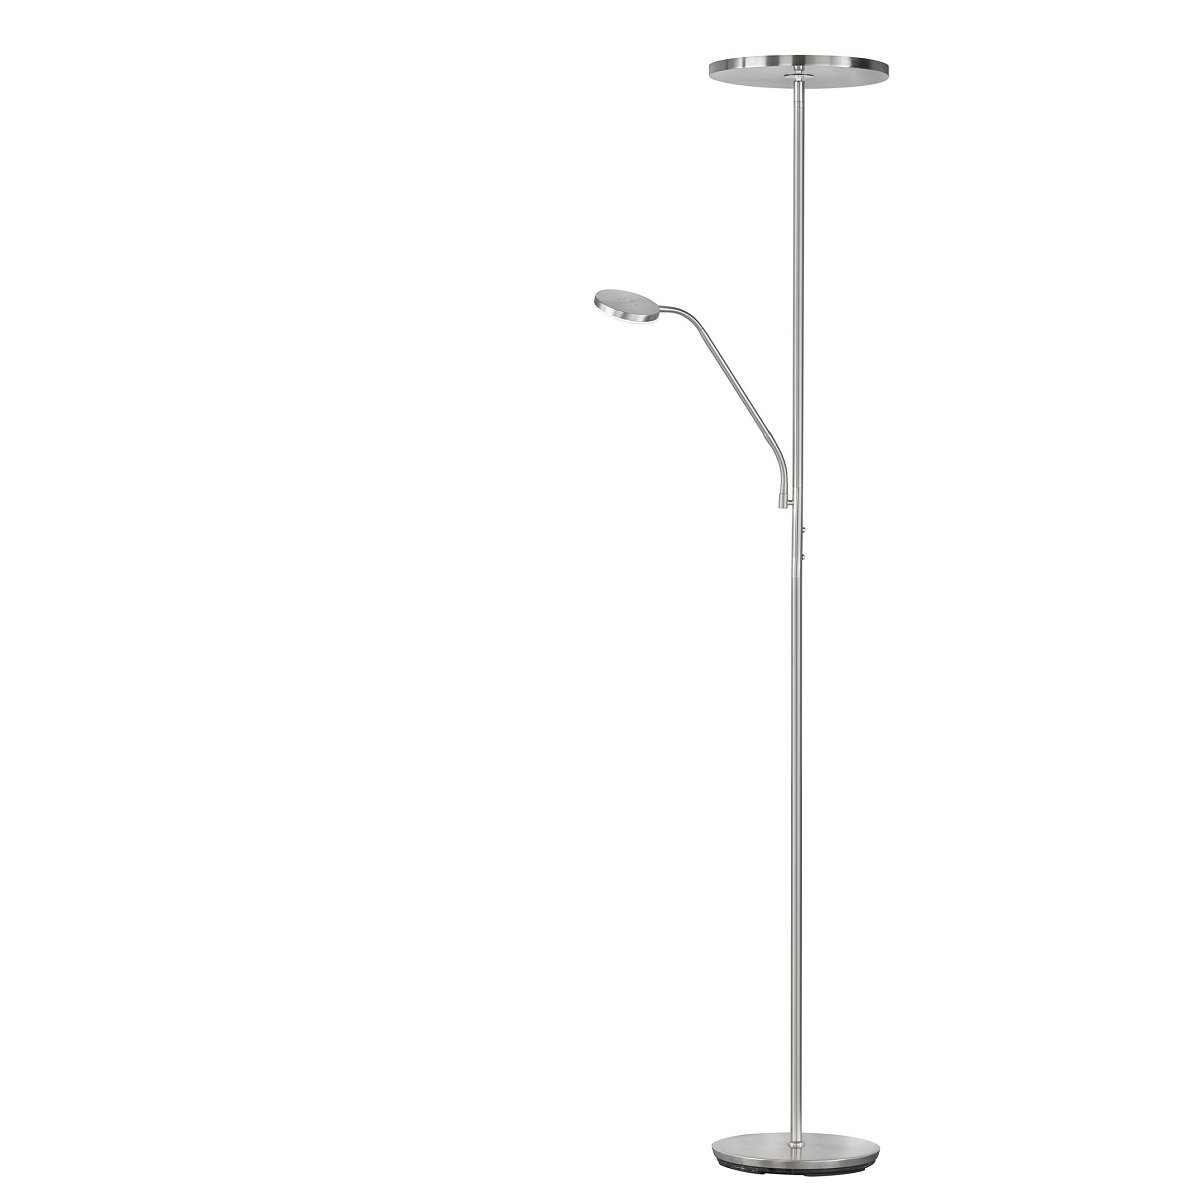 FHL easy No. 840030 LED-Stehleuchte Fabi nickelfarben chromfarben 180cm  tunable white --> Leuchten & Lampen online